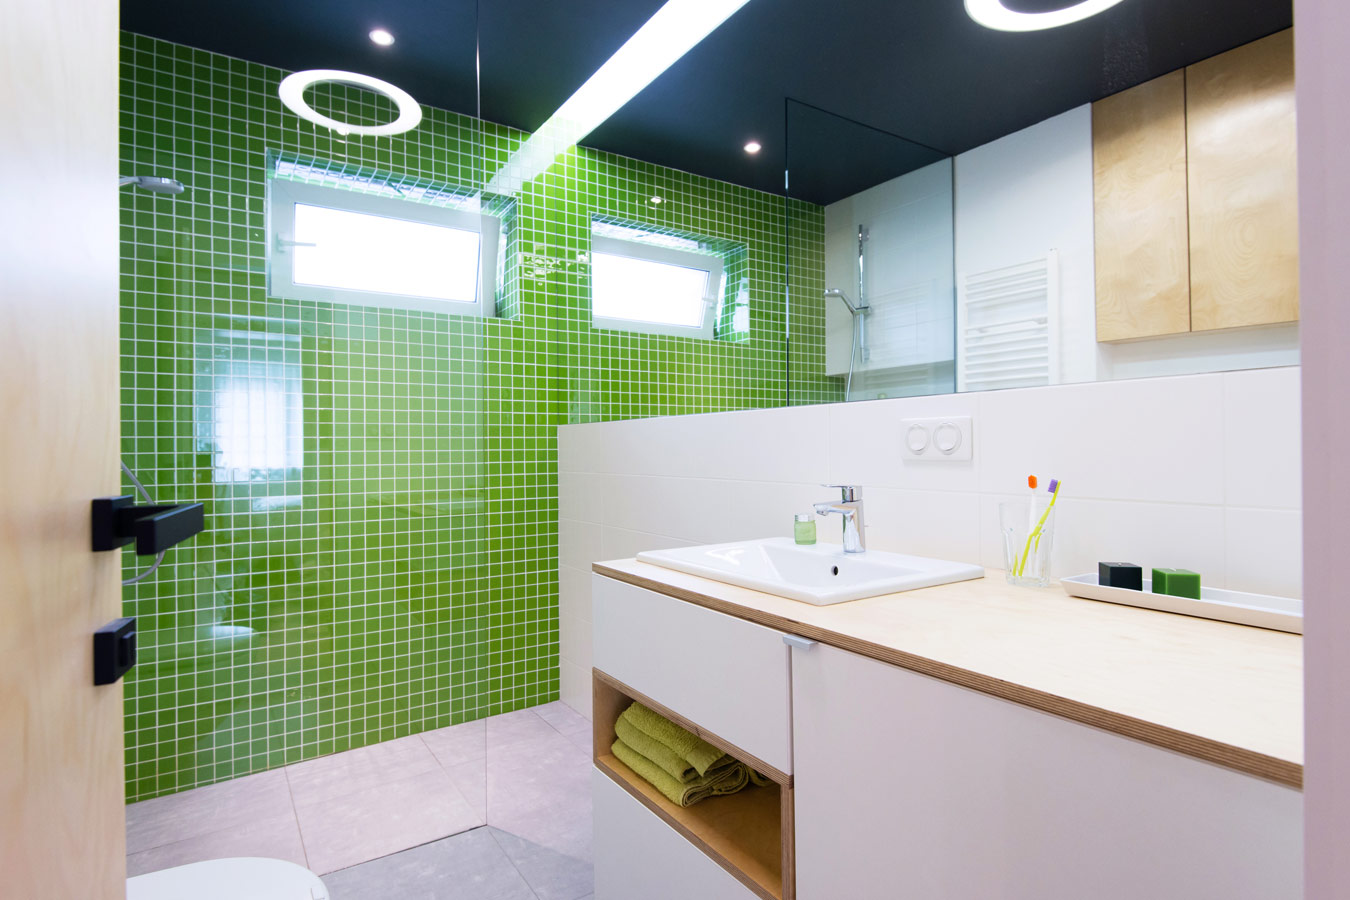 Badkamer met groene accentmuur in mozaiek tegels - glazen douchewand